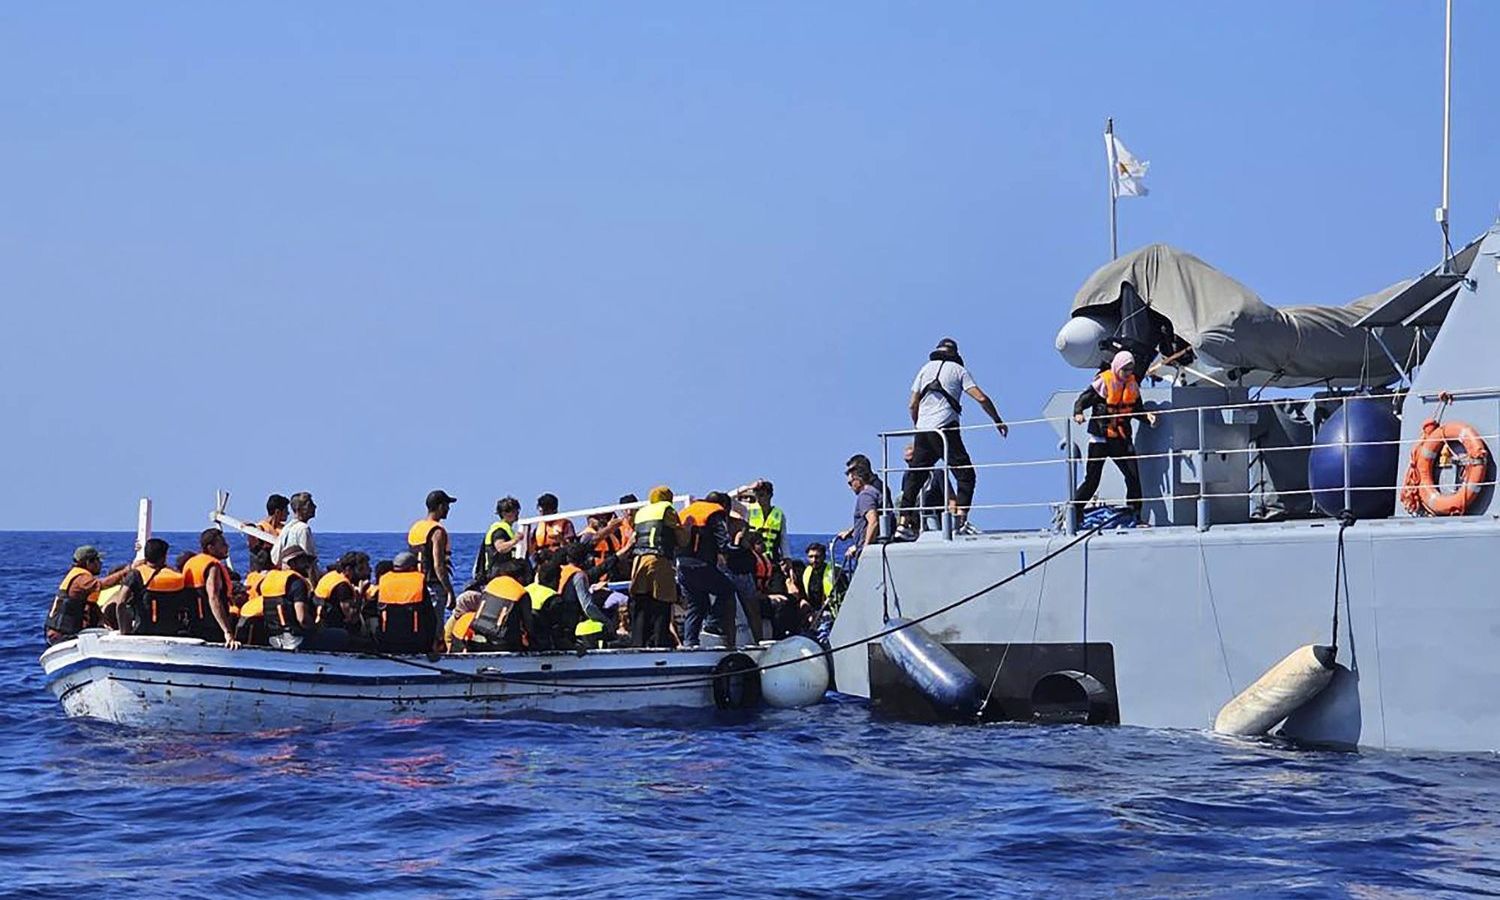 فريق الإنقاذ القبرصي وهو يساعد المهاجرين من قارب في البحر بالقرب من منتجع "بروتاراس" الساحلي الشرقي على الجانب الشرقي من جزيرة قبرص - آب 2023 (AP)